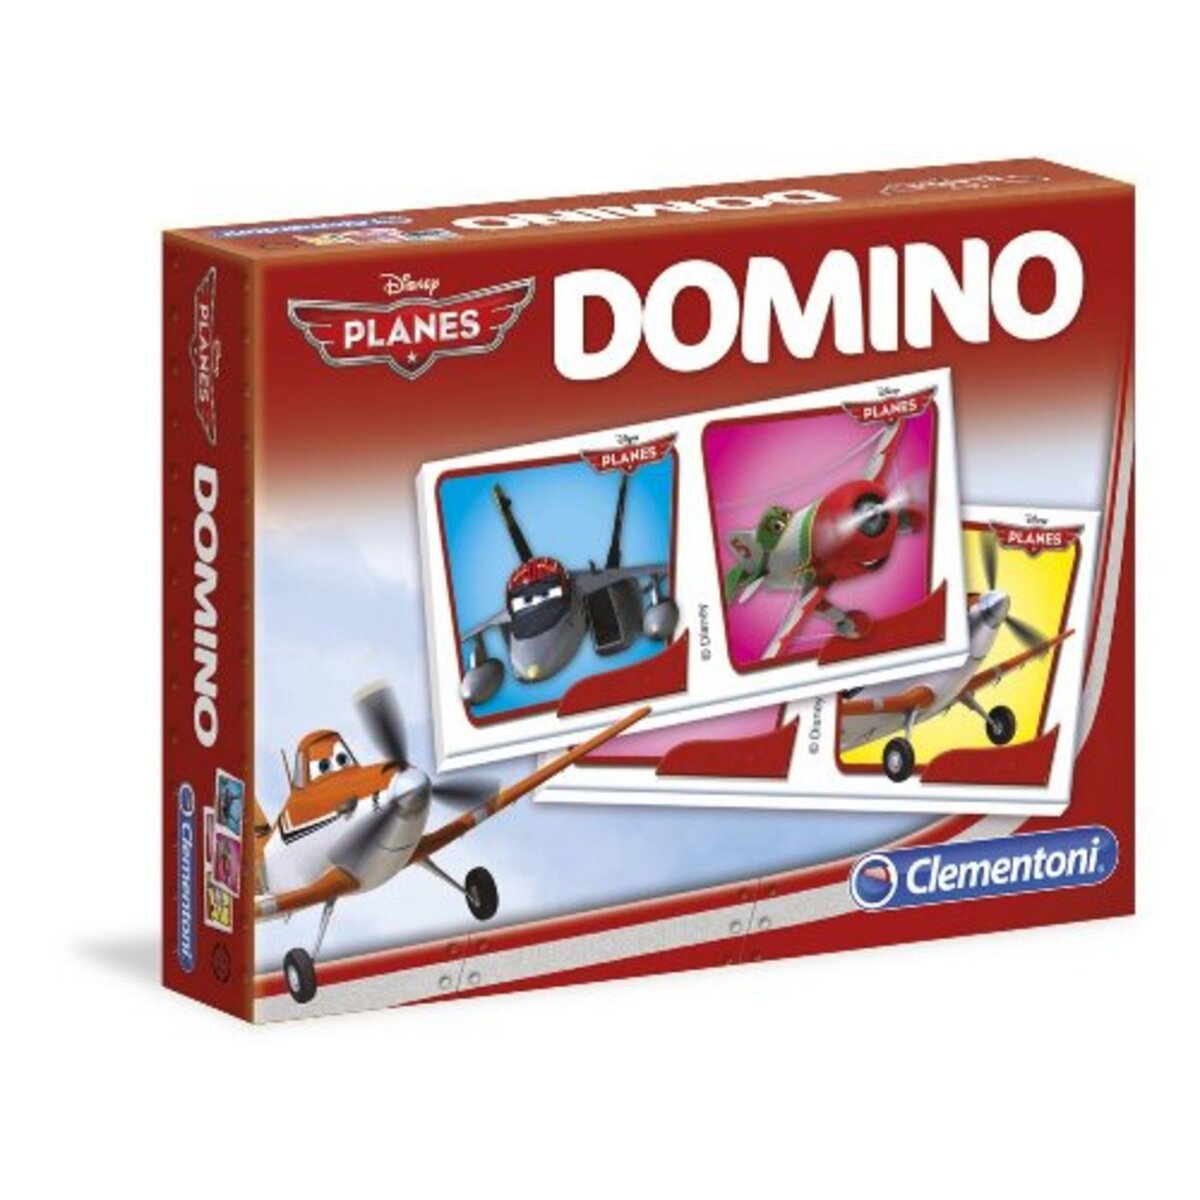 CLEMENTONI Domino Planes